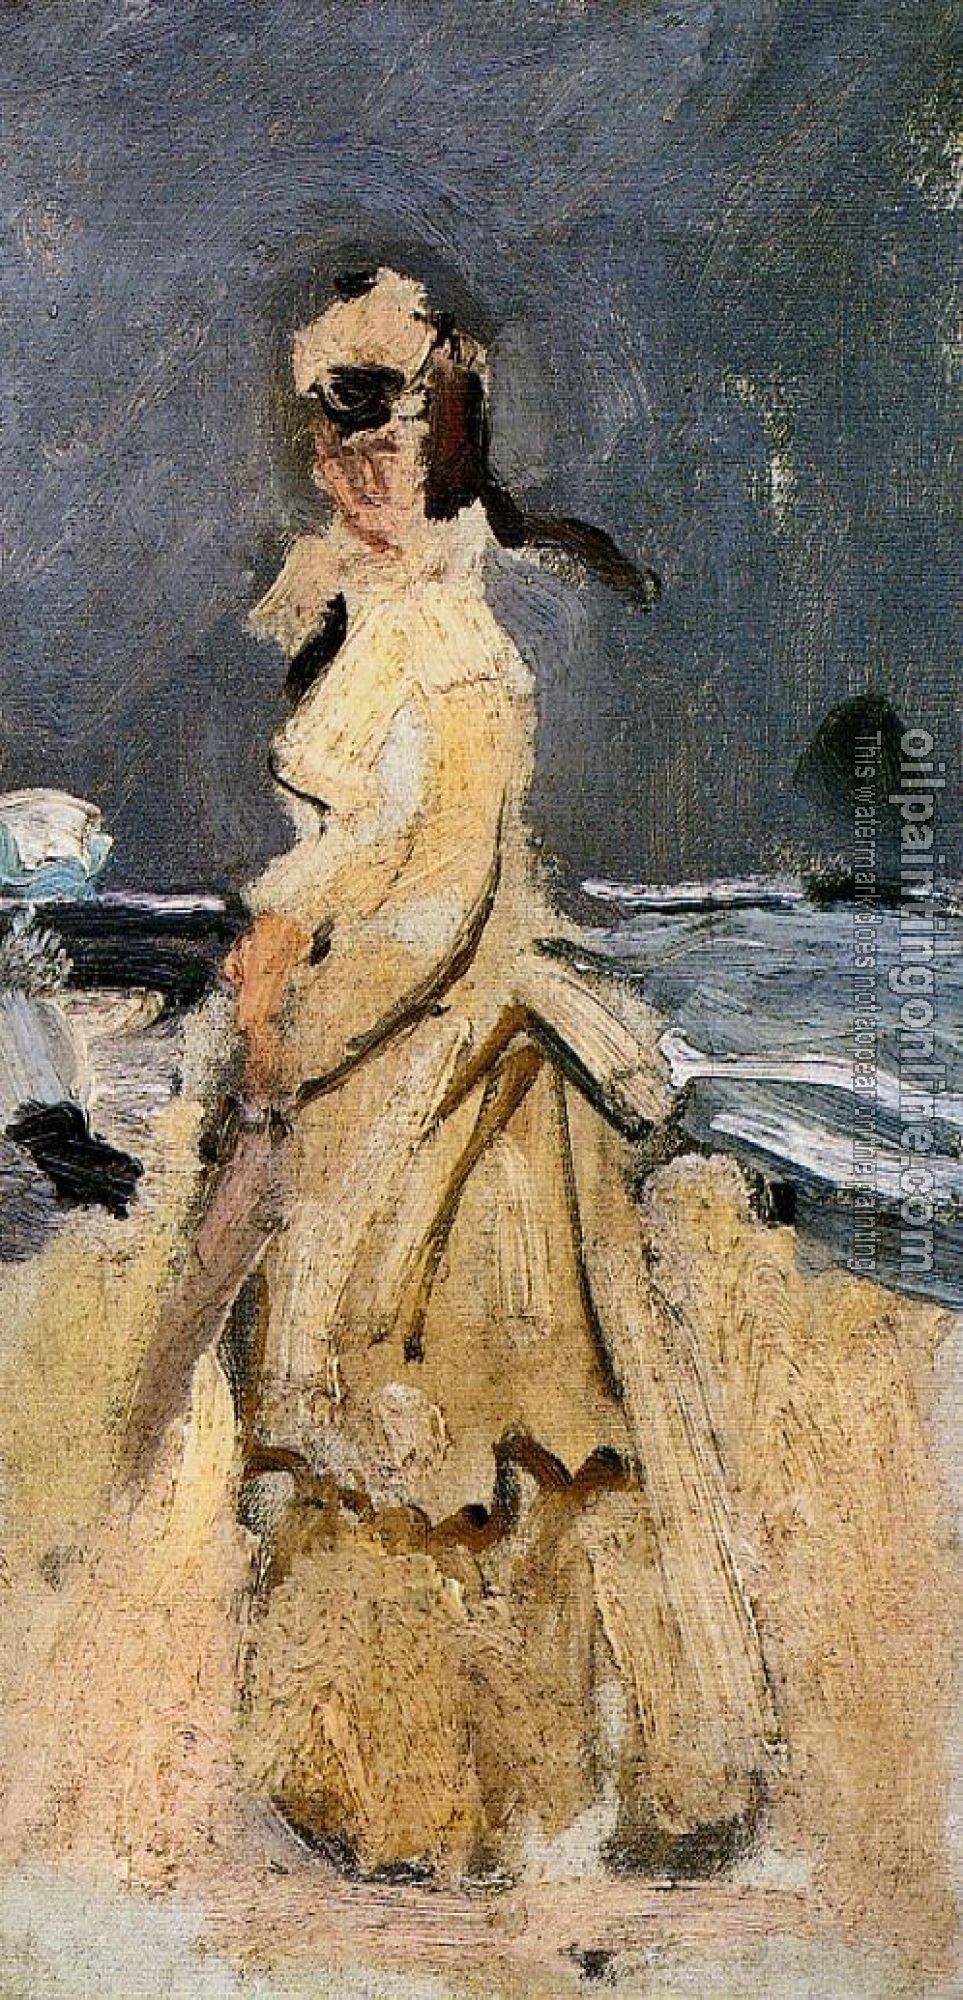 Monet, Claude Oscar - Camille on the Beach